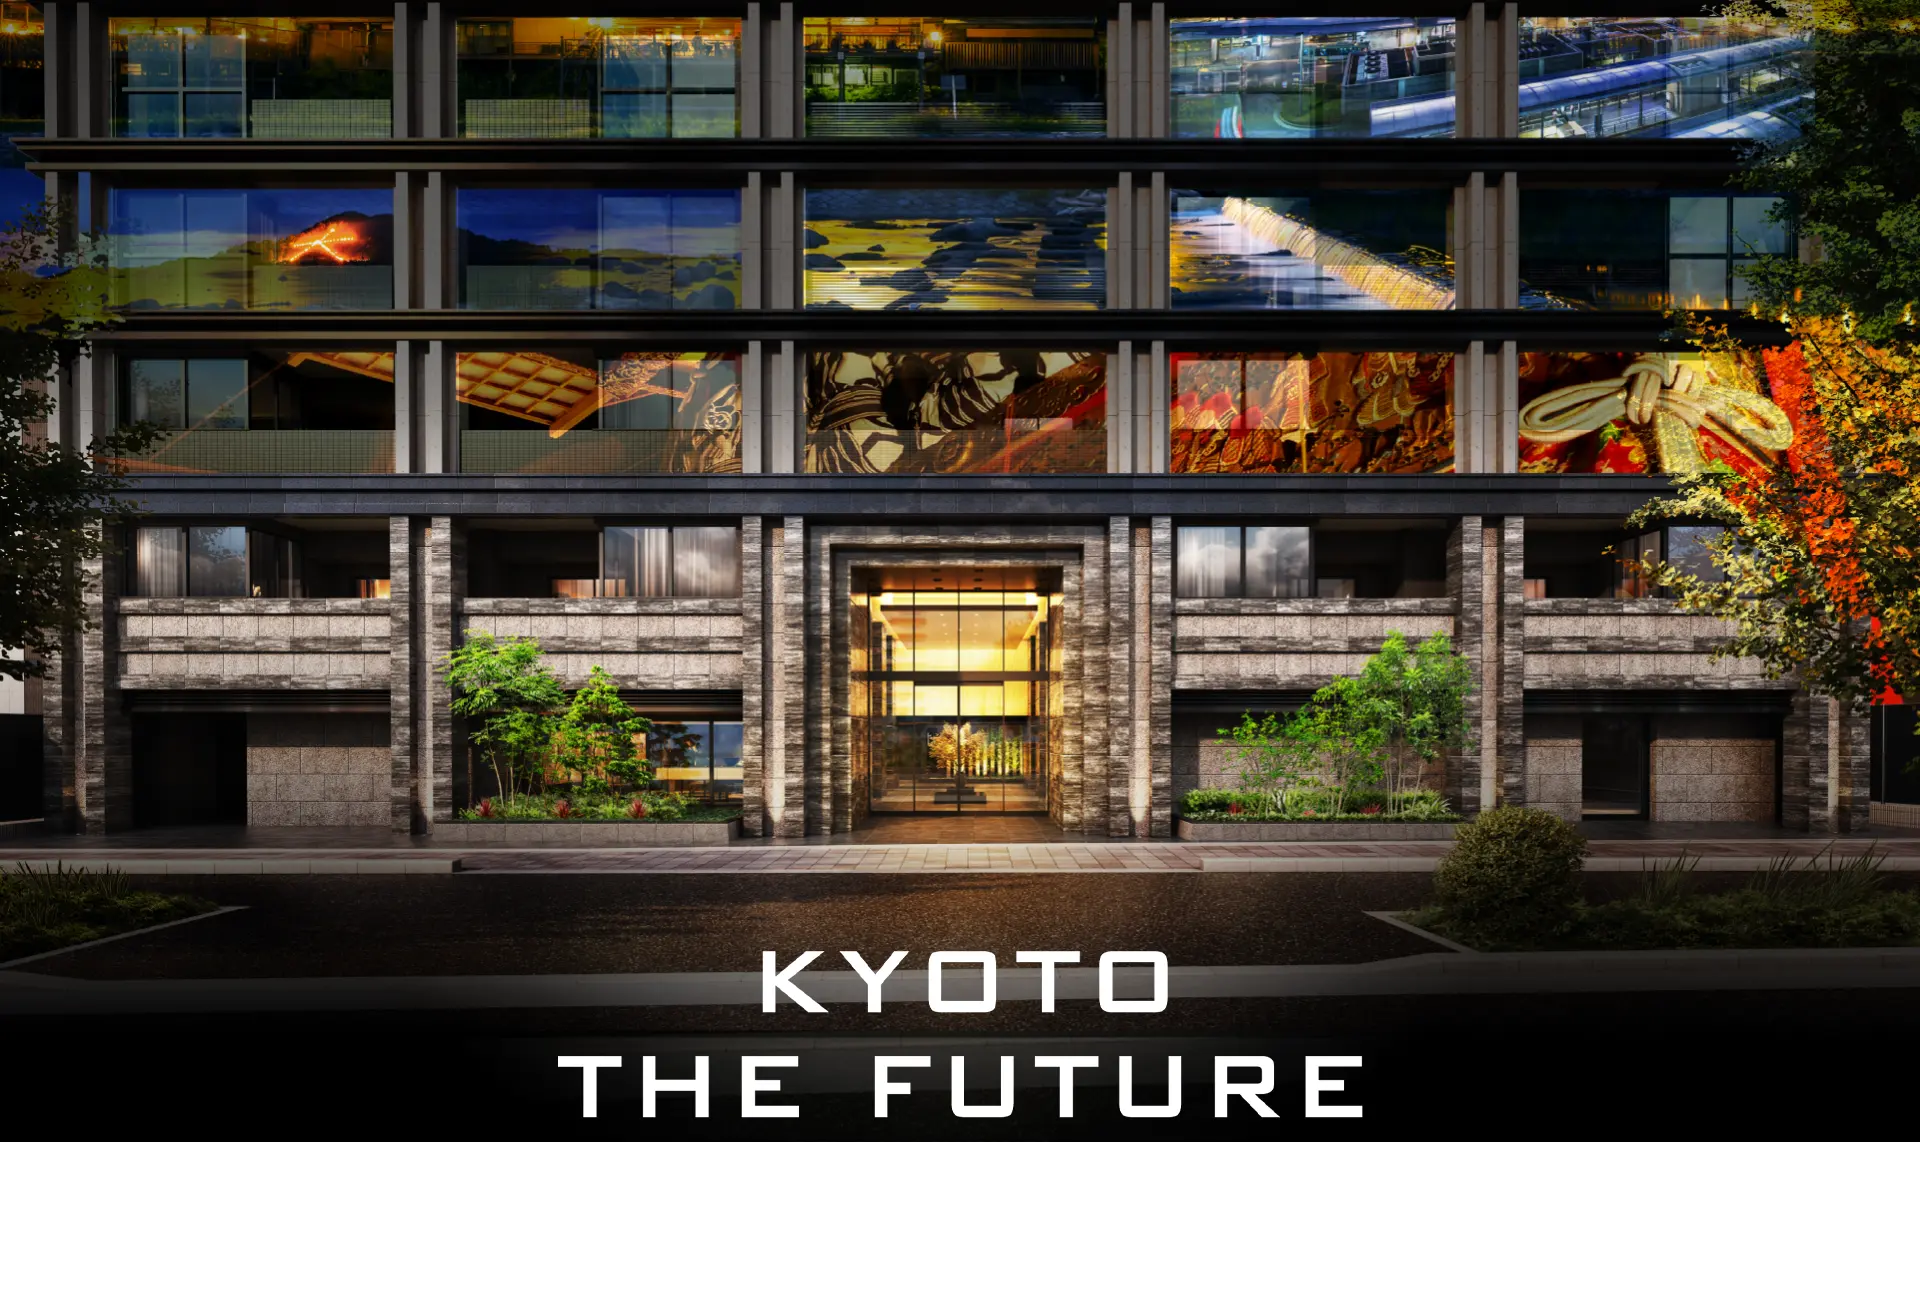 京都の伝統を継ぎ、壮大な未来を描く。KYOTO THE FUTURE